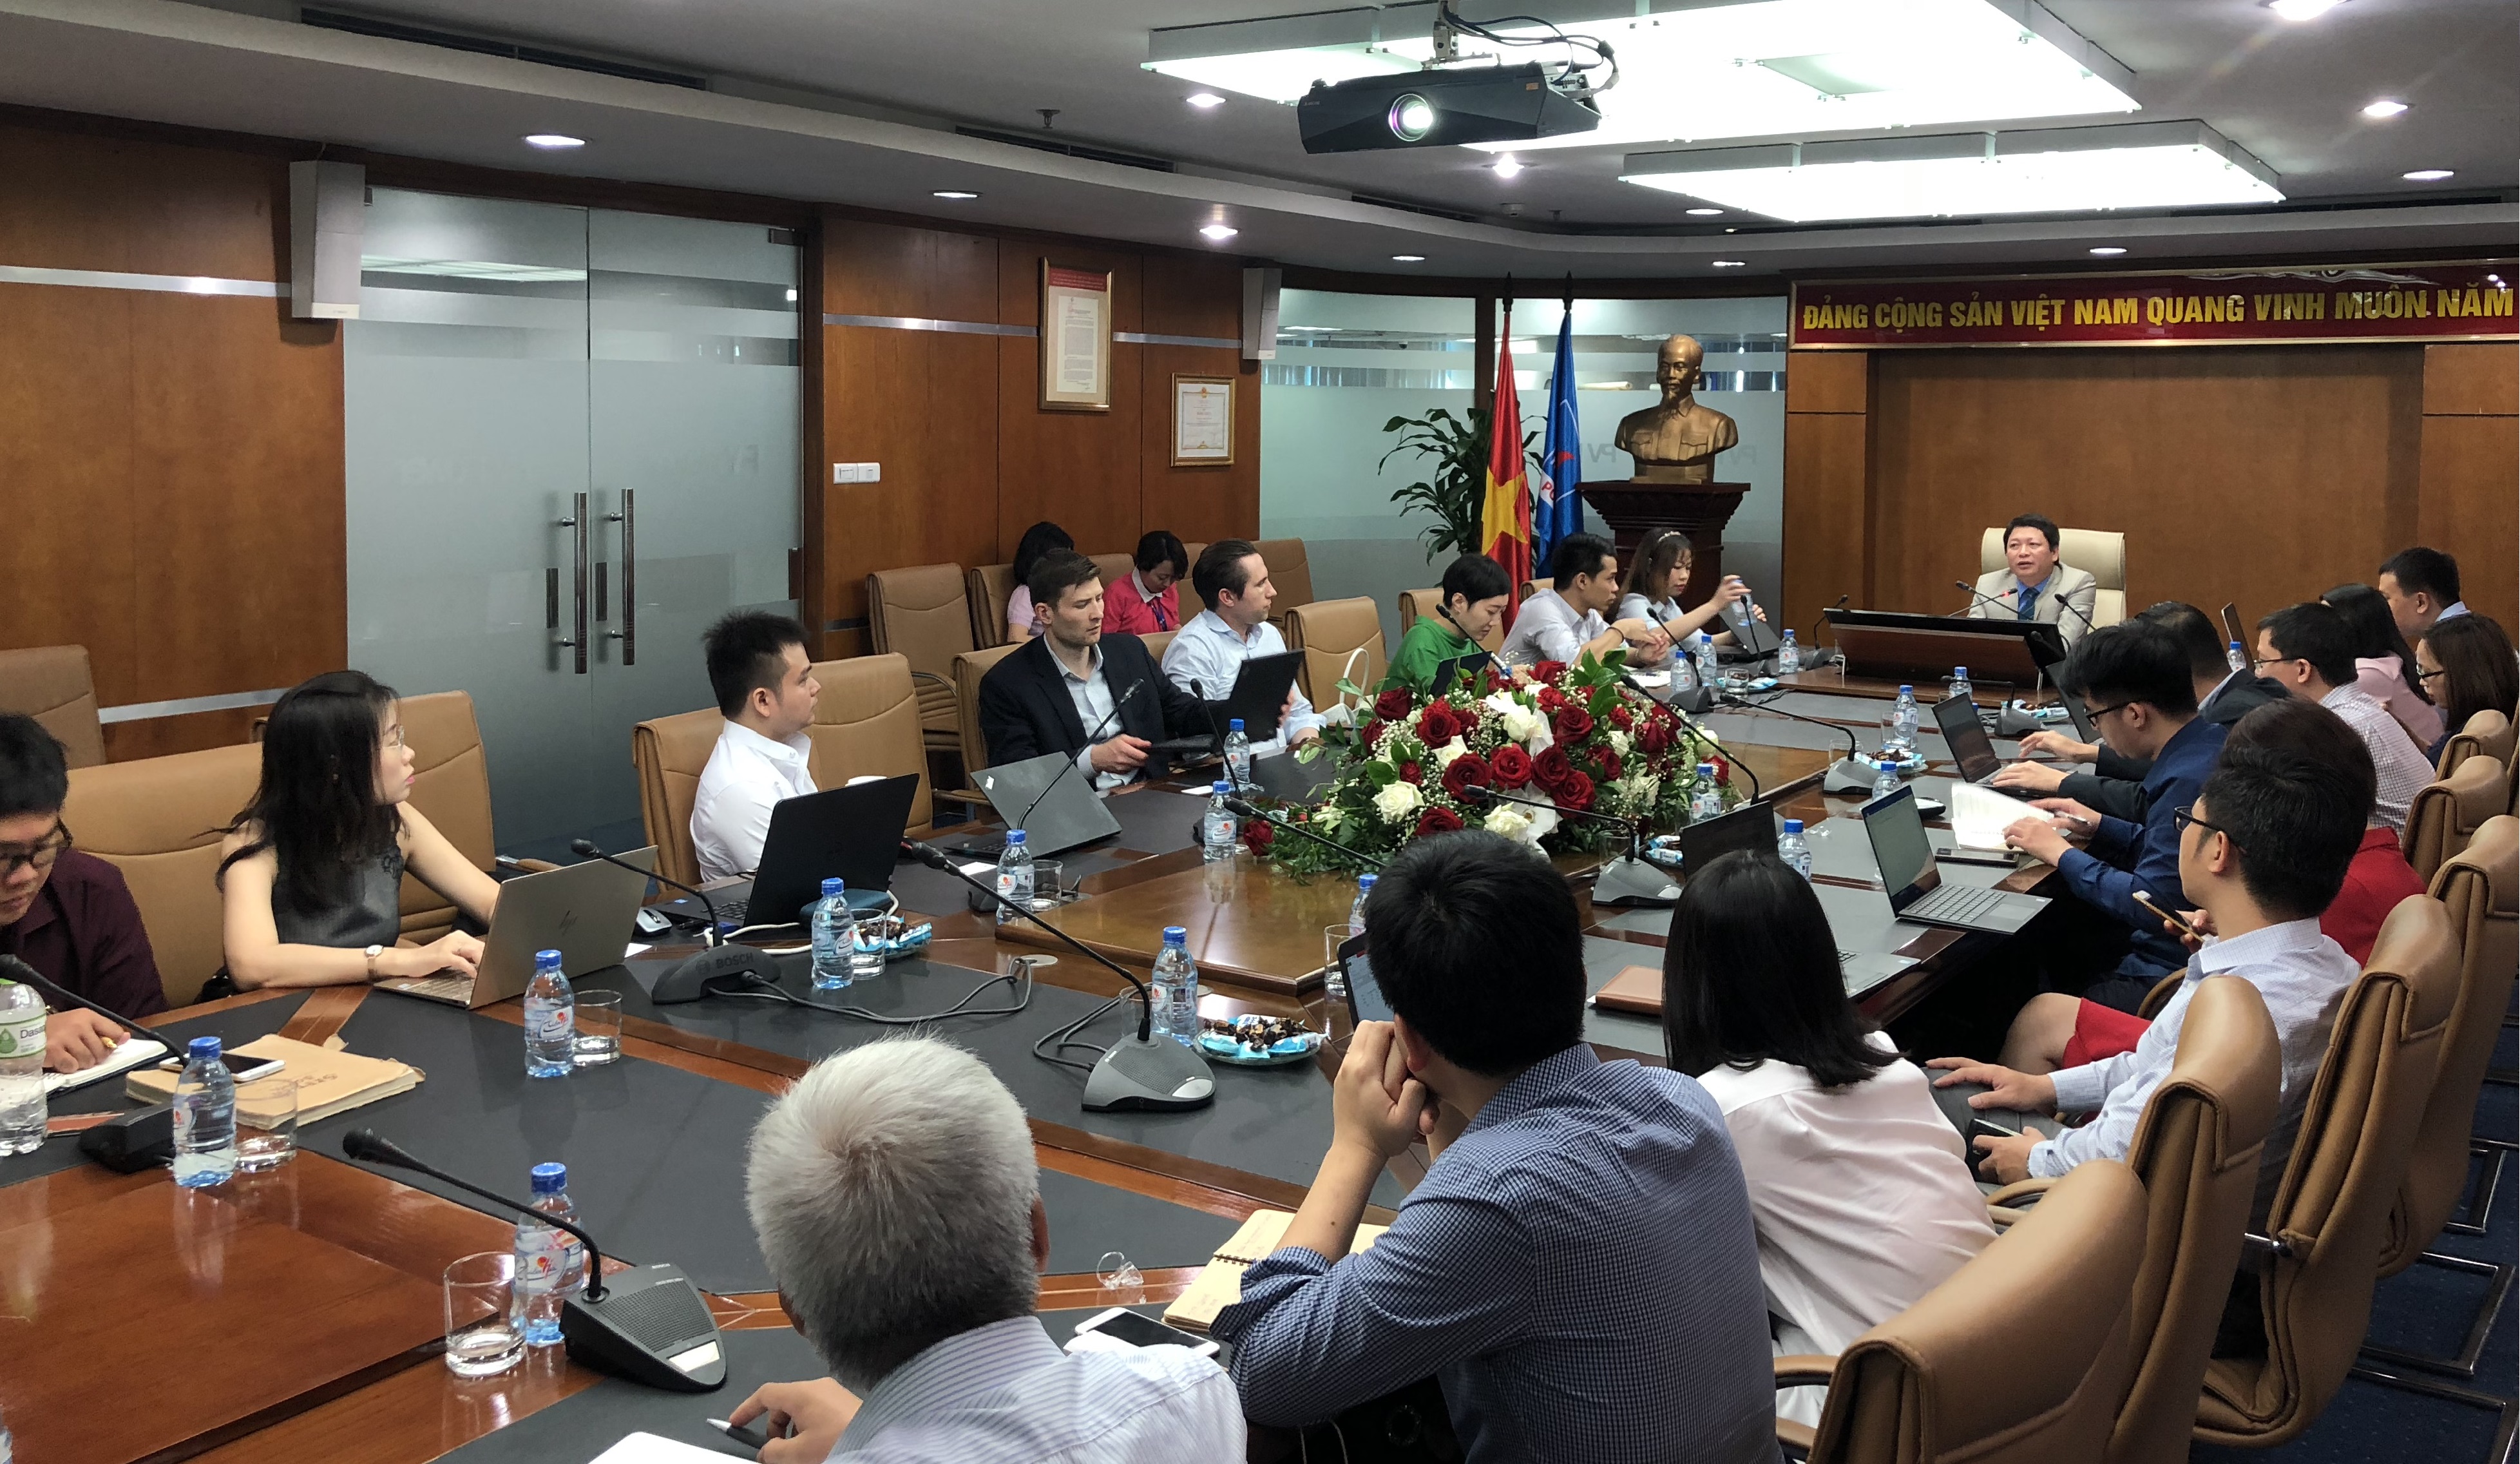 PV Power gặp mặt các Quỹ đầu tư trong chương trình Update tour 2018 do Công ty chứng khoán Bản Việt tổ chức